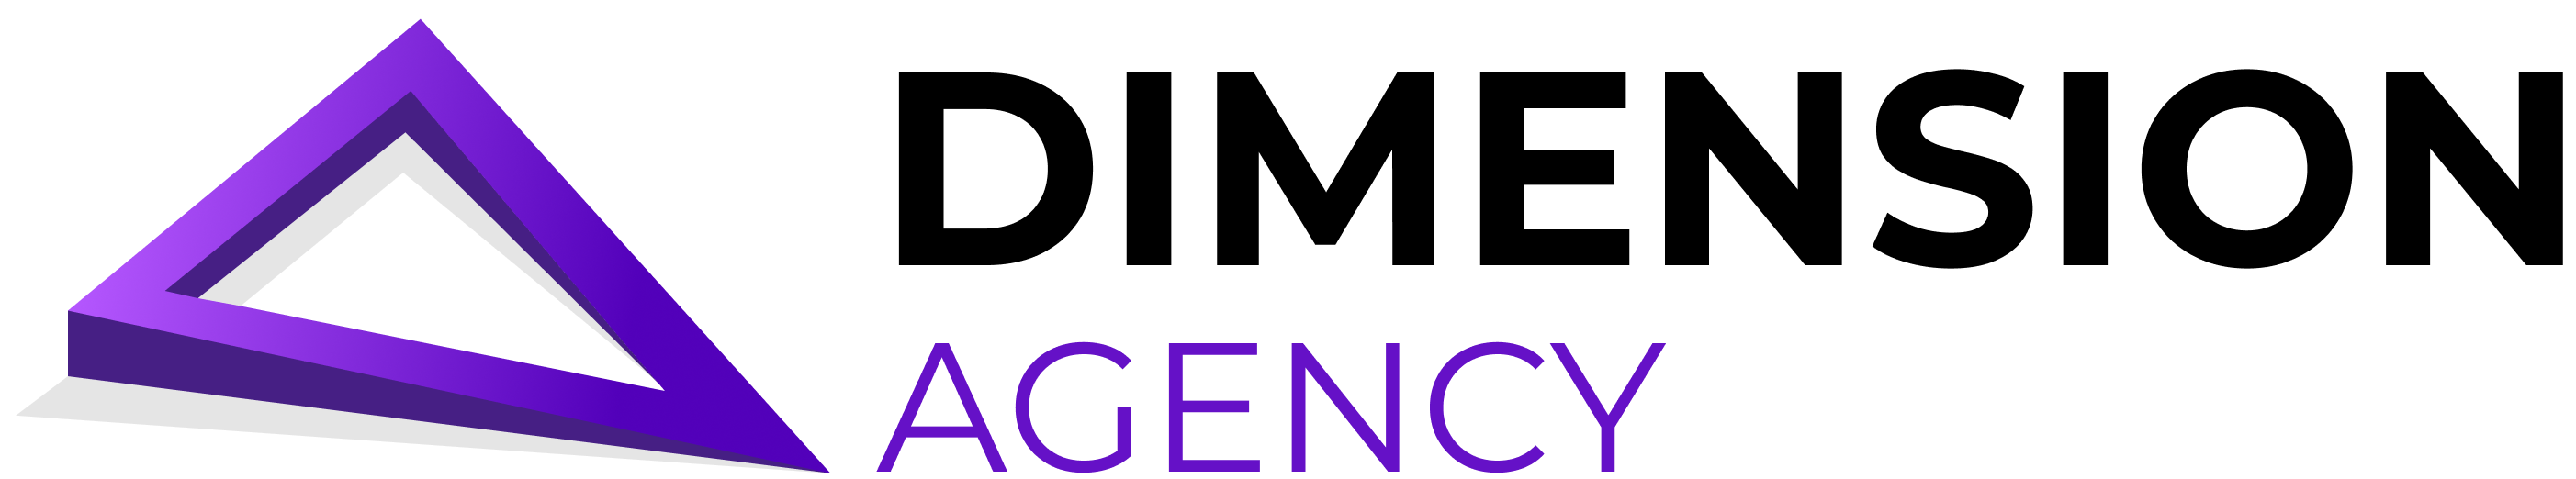 Dimension Agency Logo